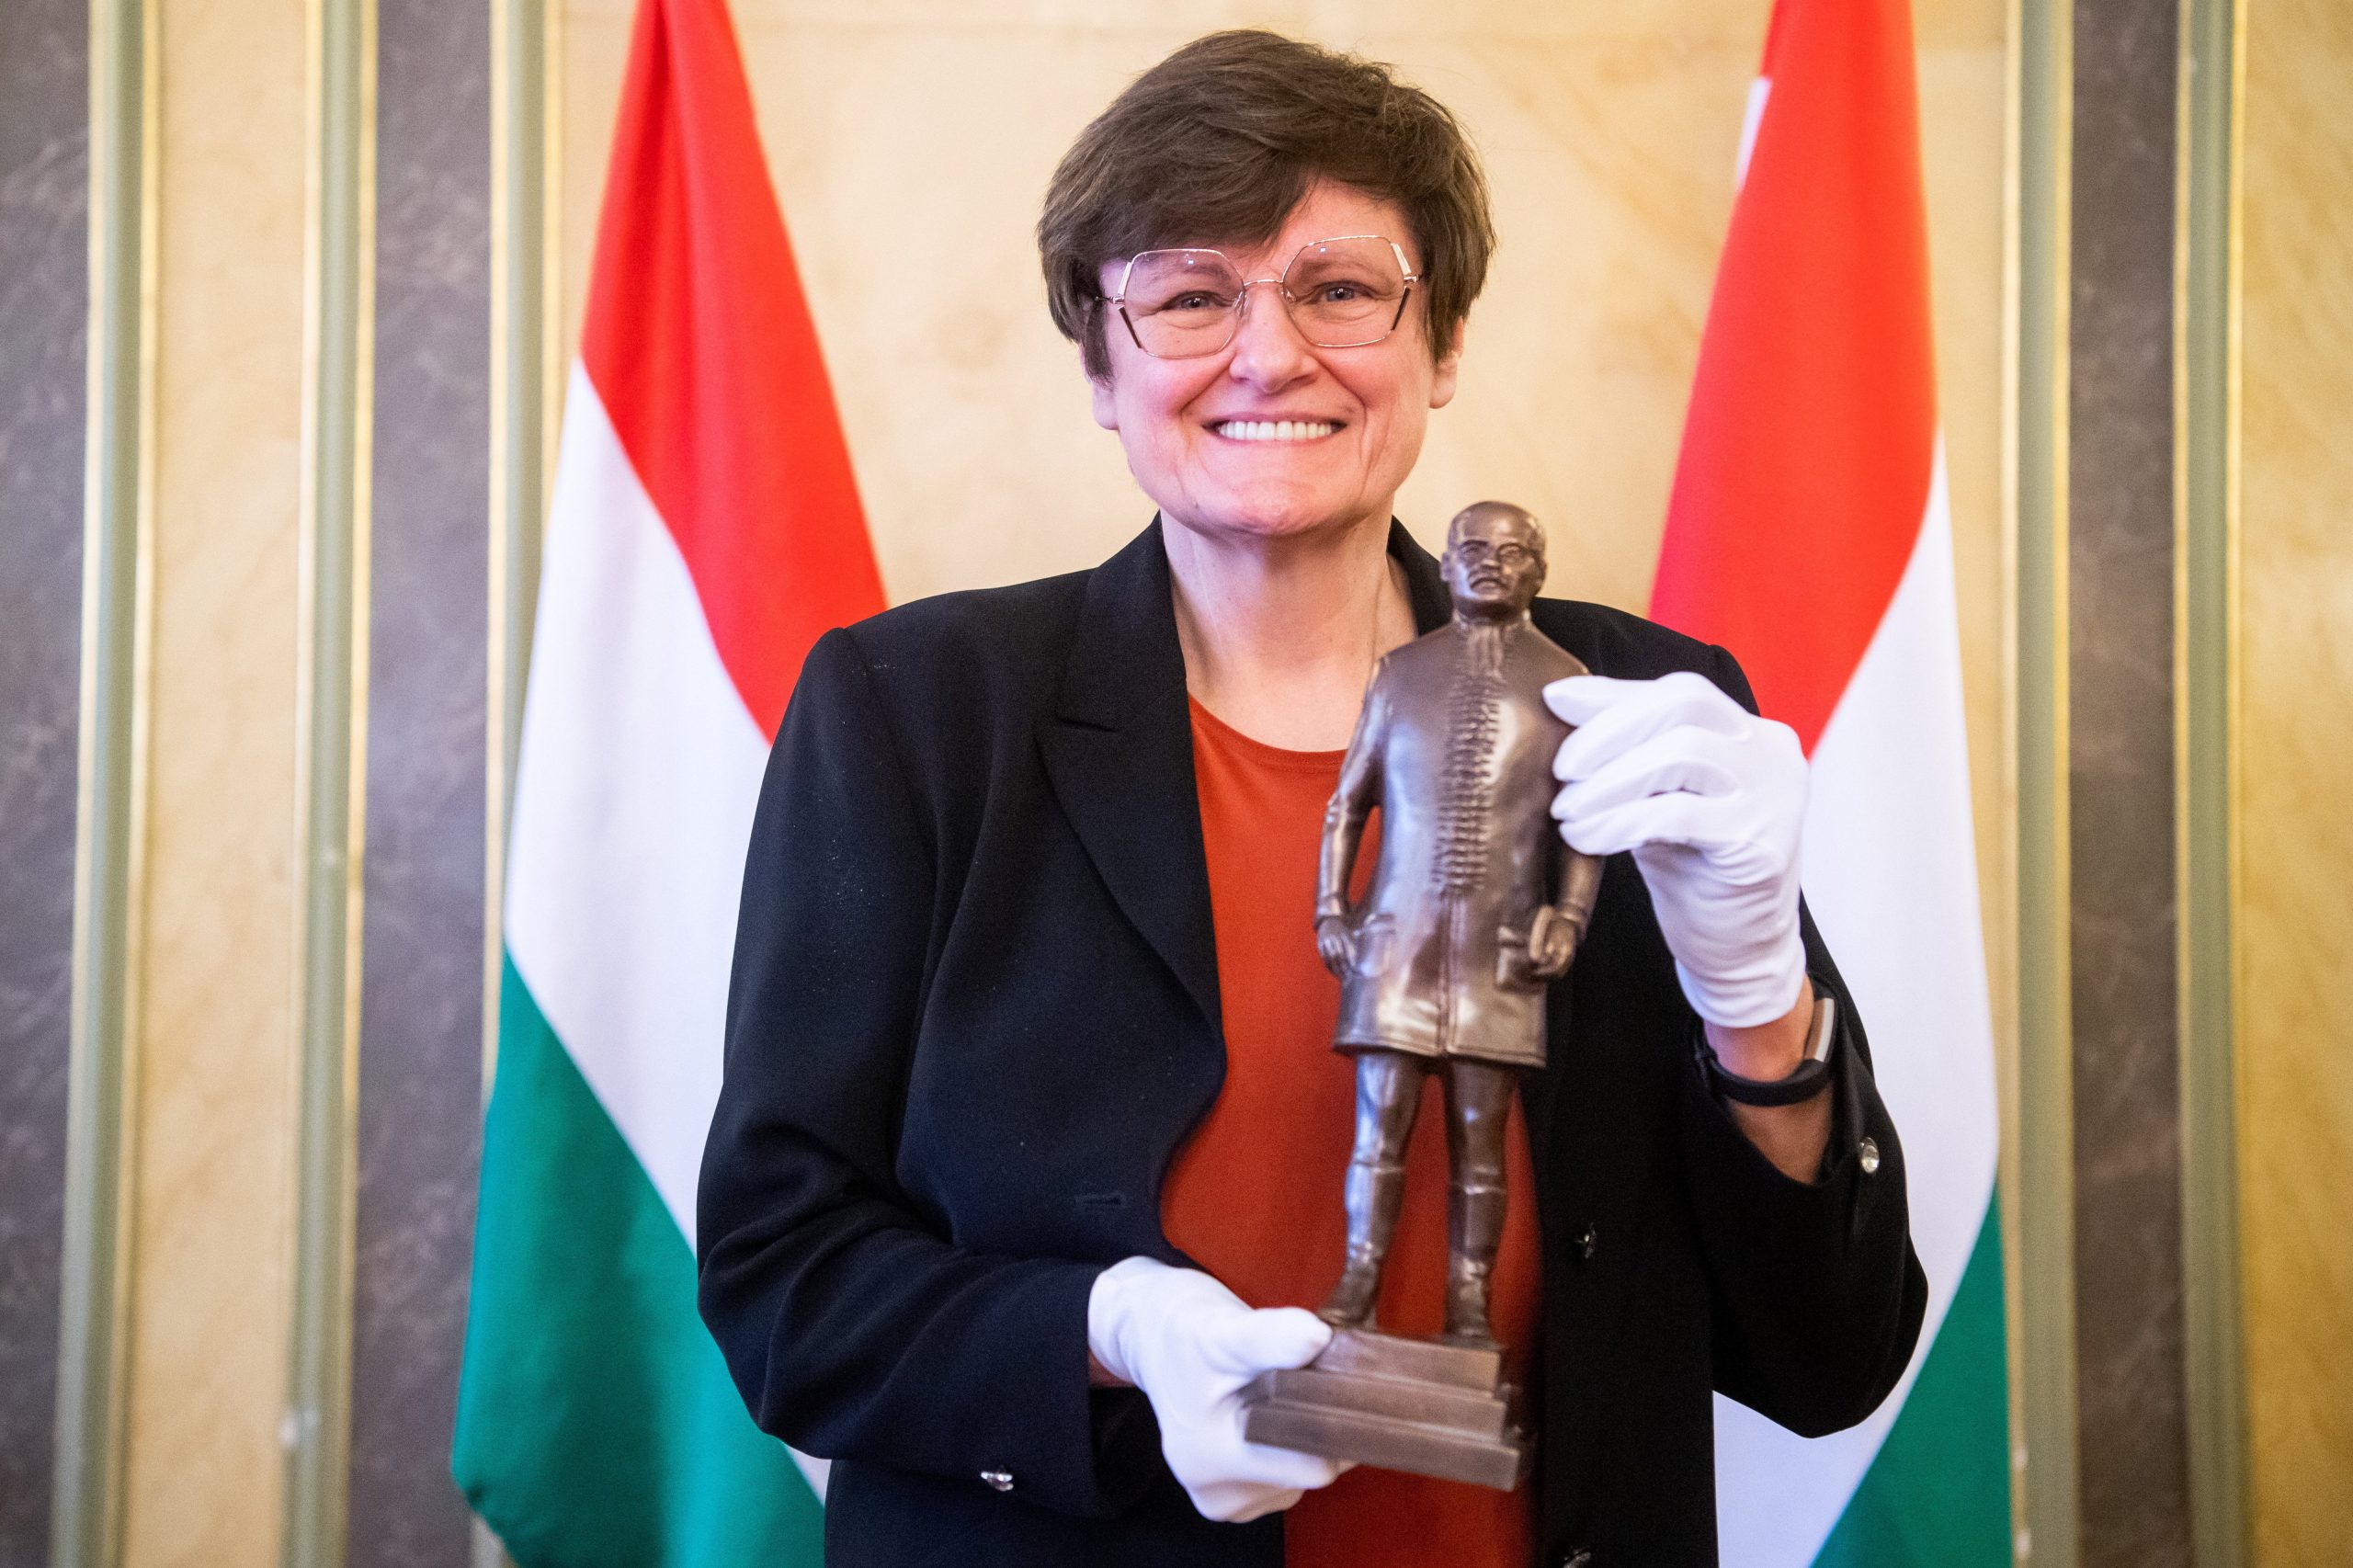 Biochemist Karikó Awarded Semmelweis Prize